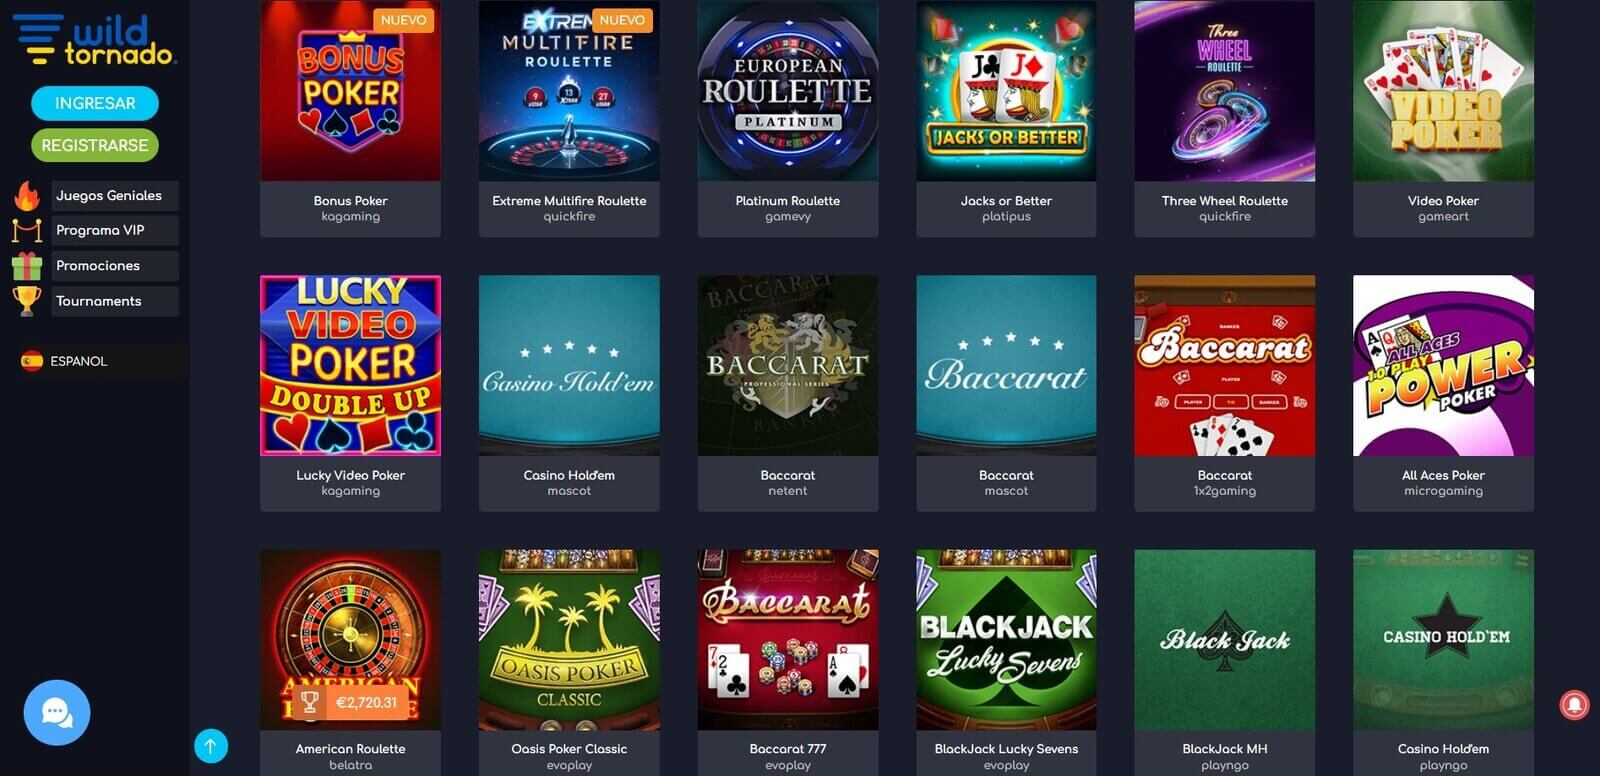 Juegos de WildTornado casino online en Latinoamérica